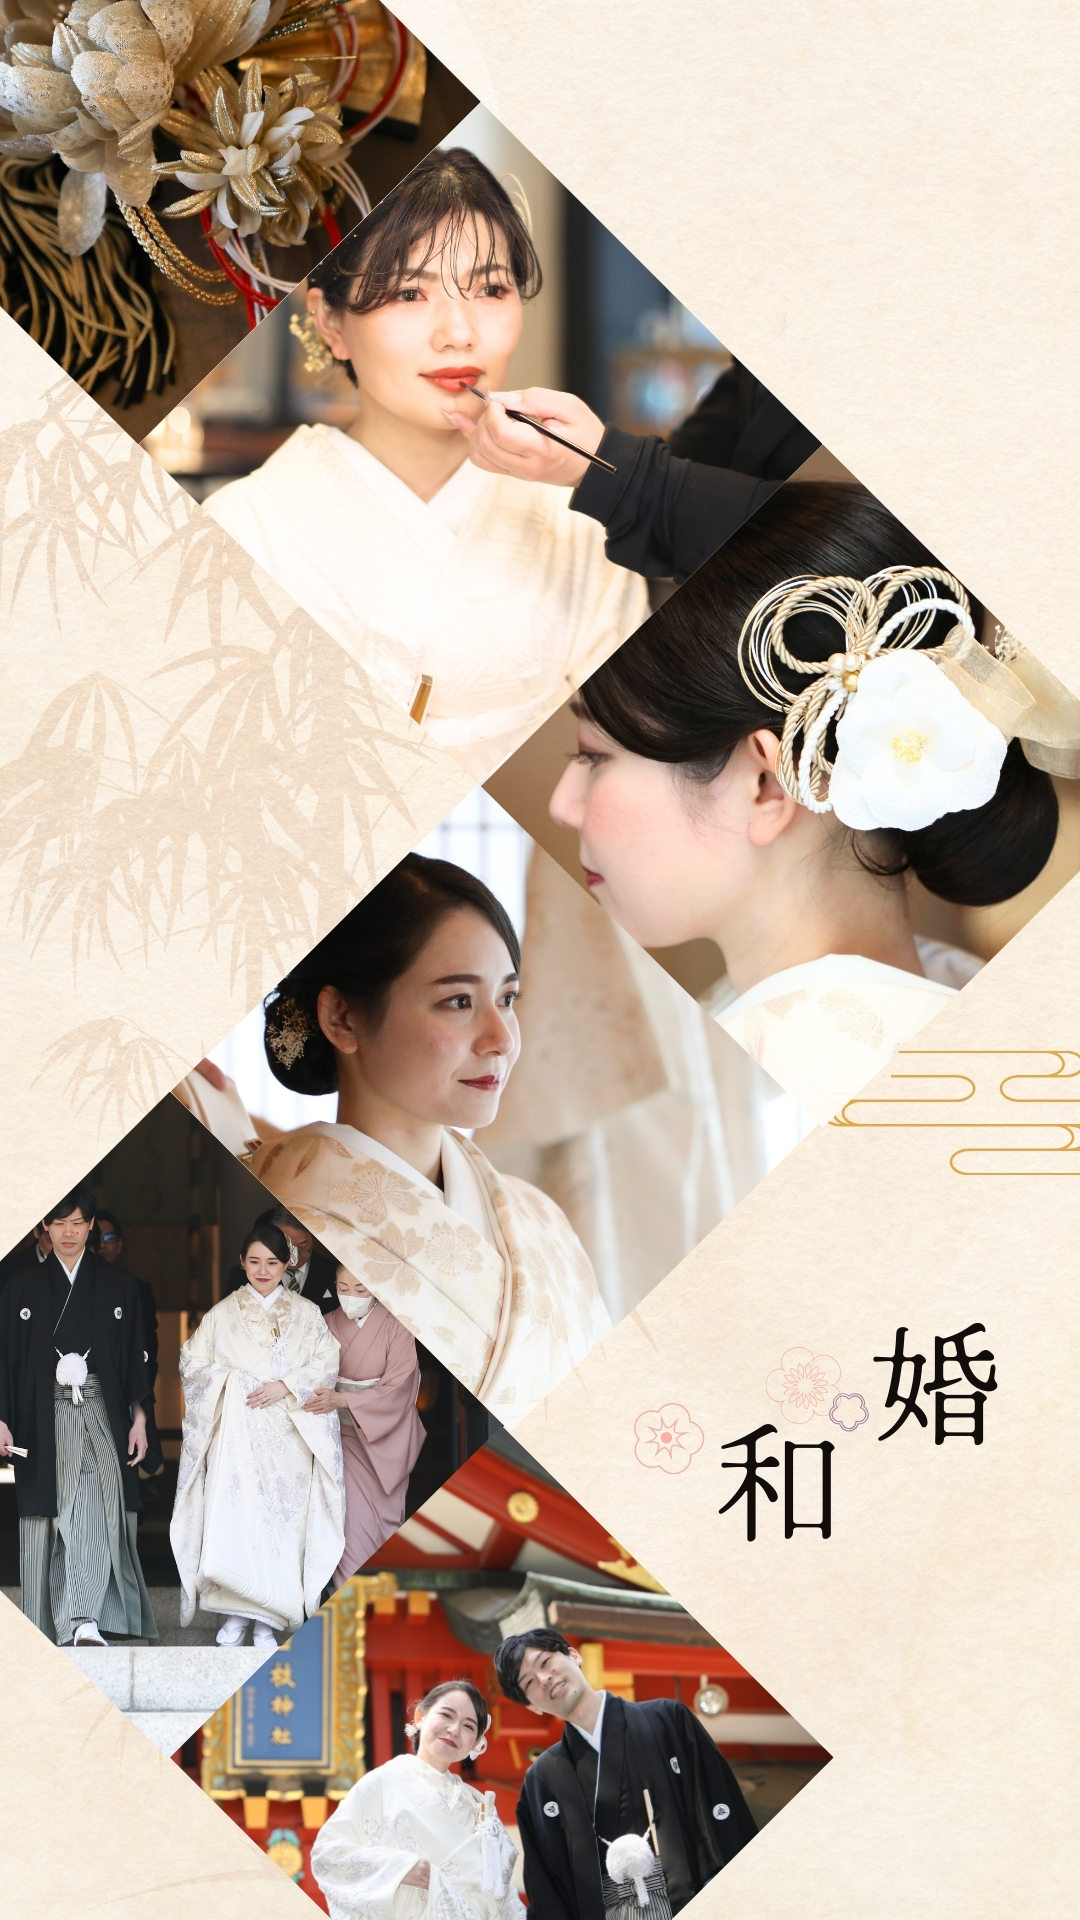 〜和婚〜伝統と美しさが融合する日本の美を纏って、心温まる和婚を